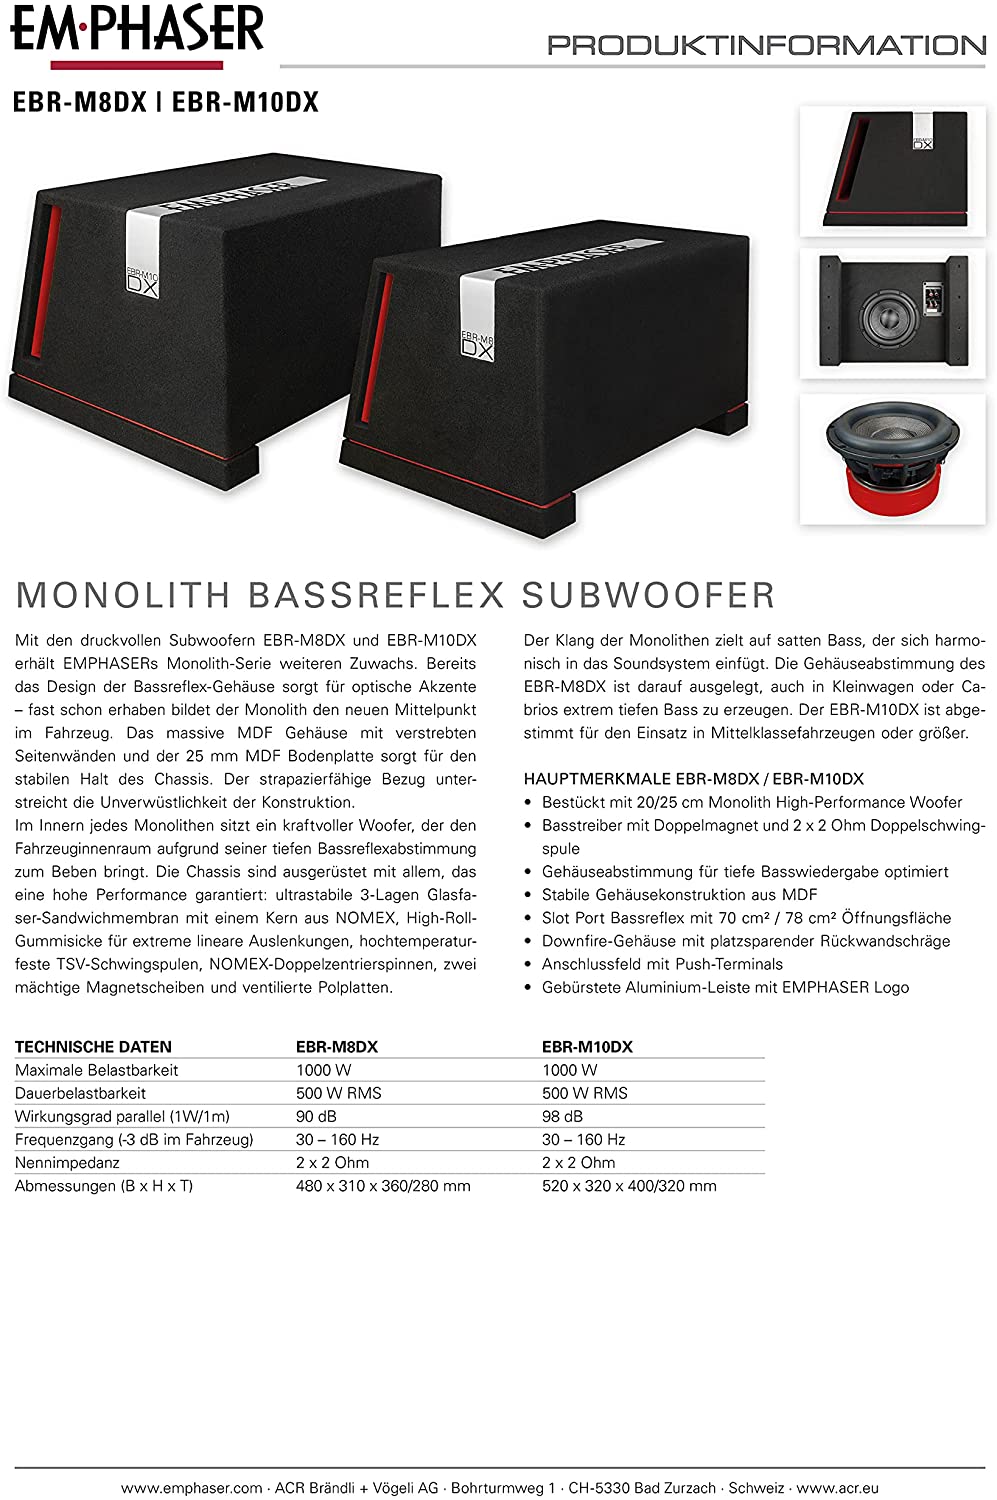 EMPHASER EBR-M8DX Monolith 20 cm Bassreflex-Subwoofer Druckvoller 20 cm / 8 Zoll Subwoofer, MDF Bassreflex Gehäuse, 1000 Watt